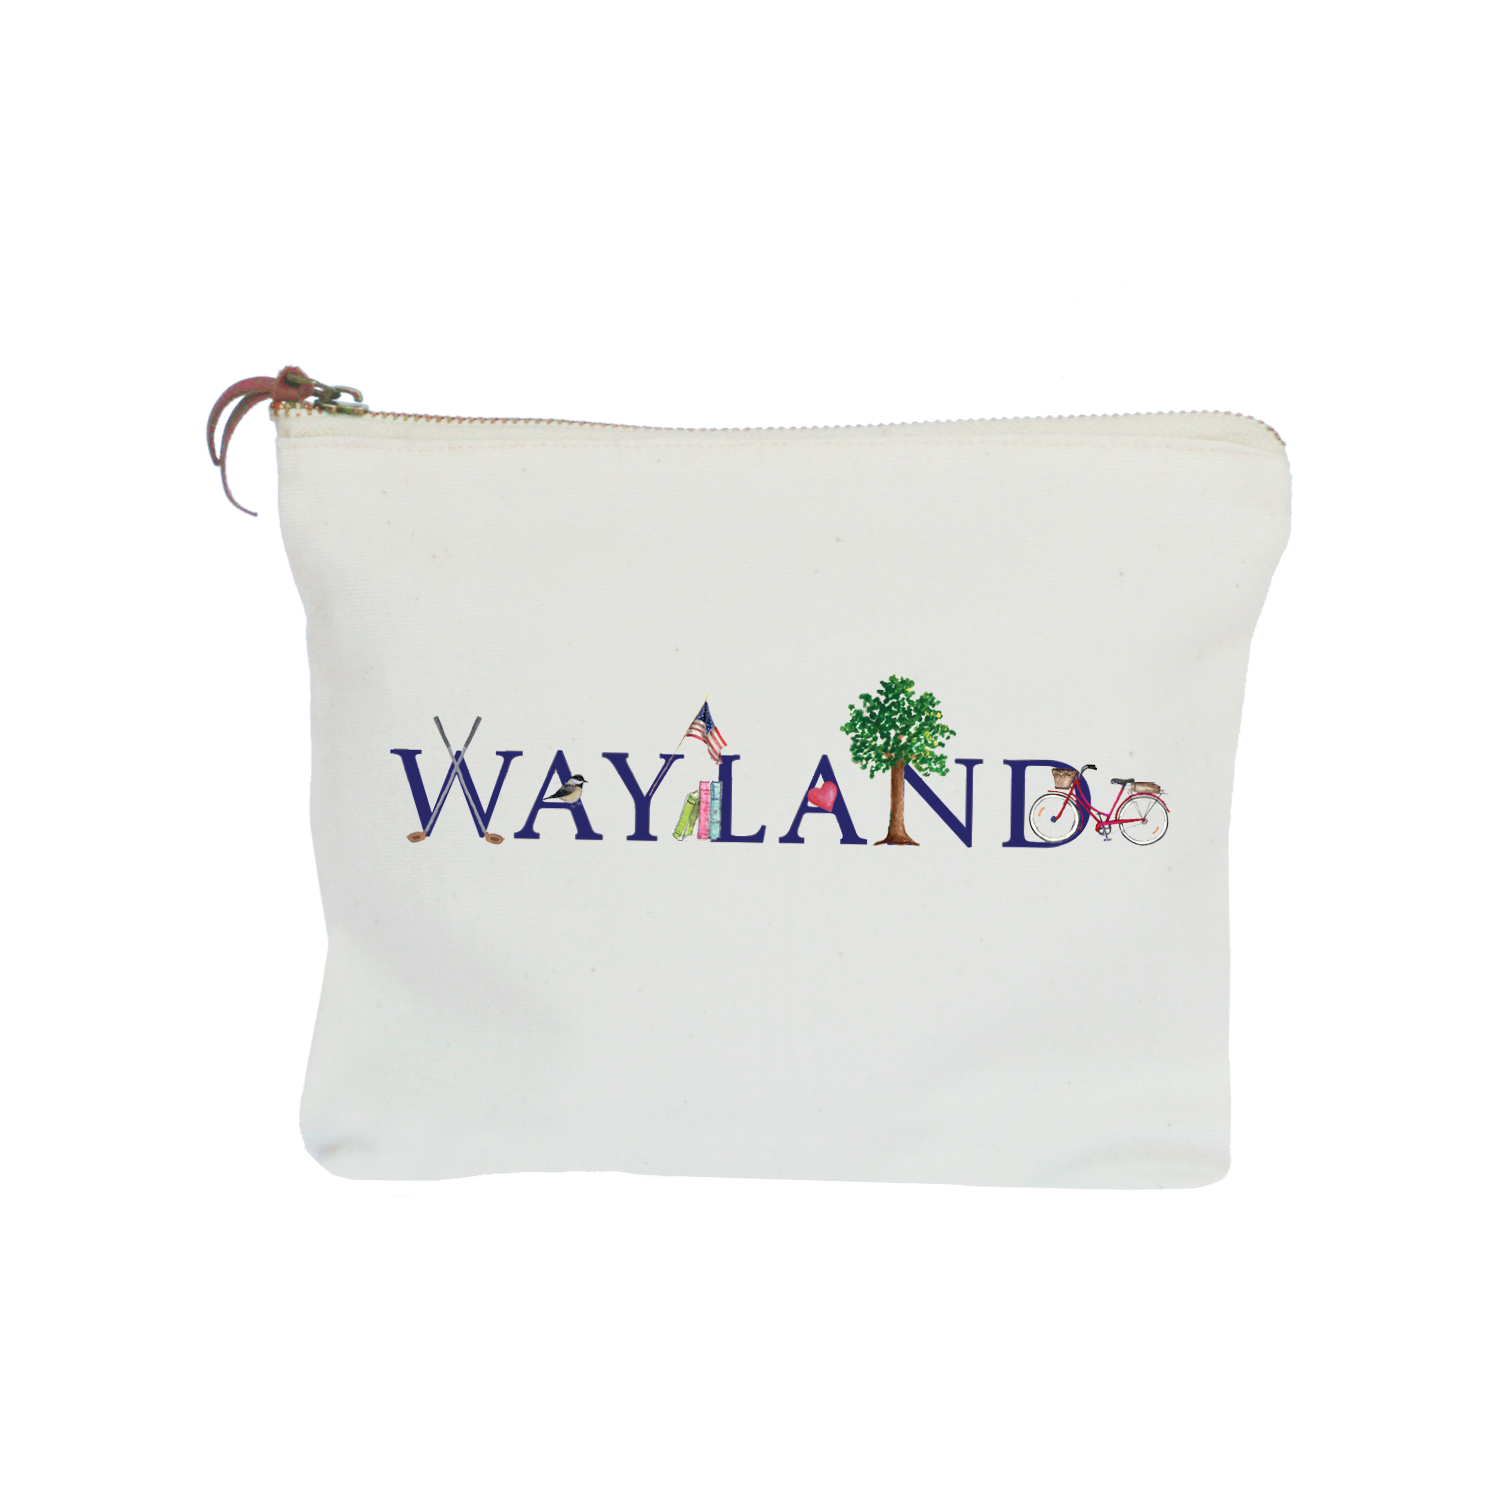 wayland zipper pouch